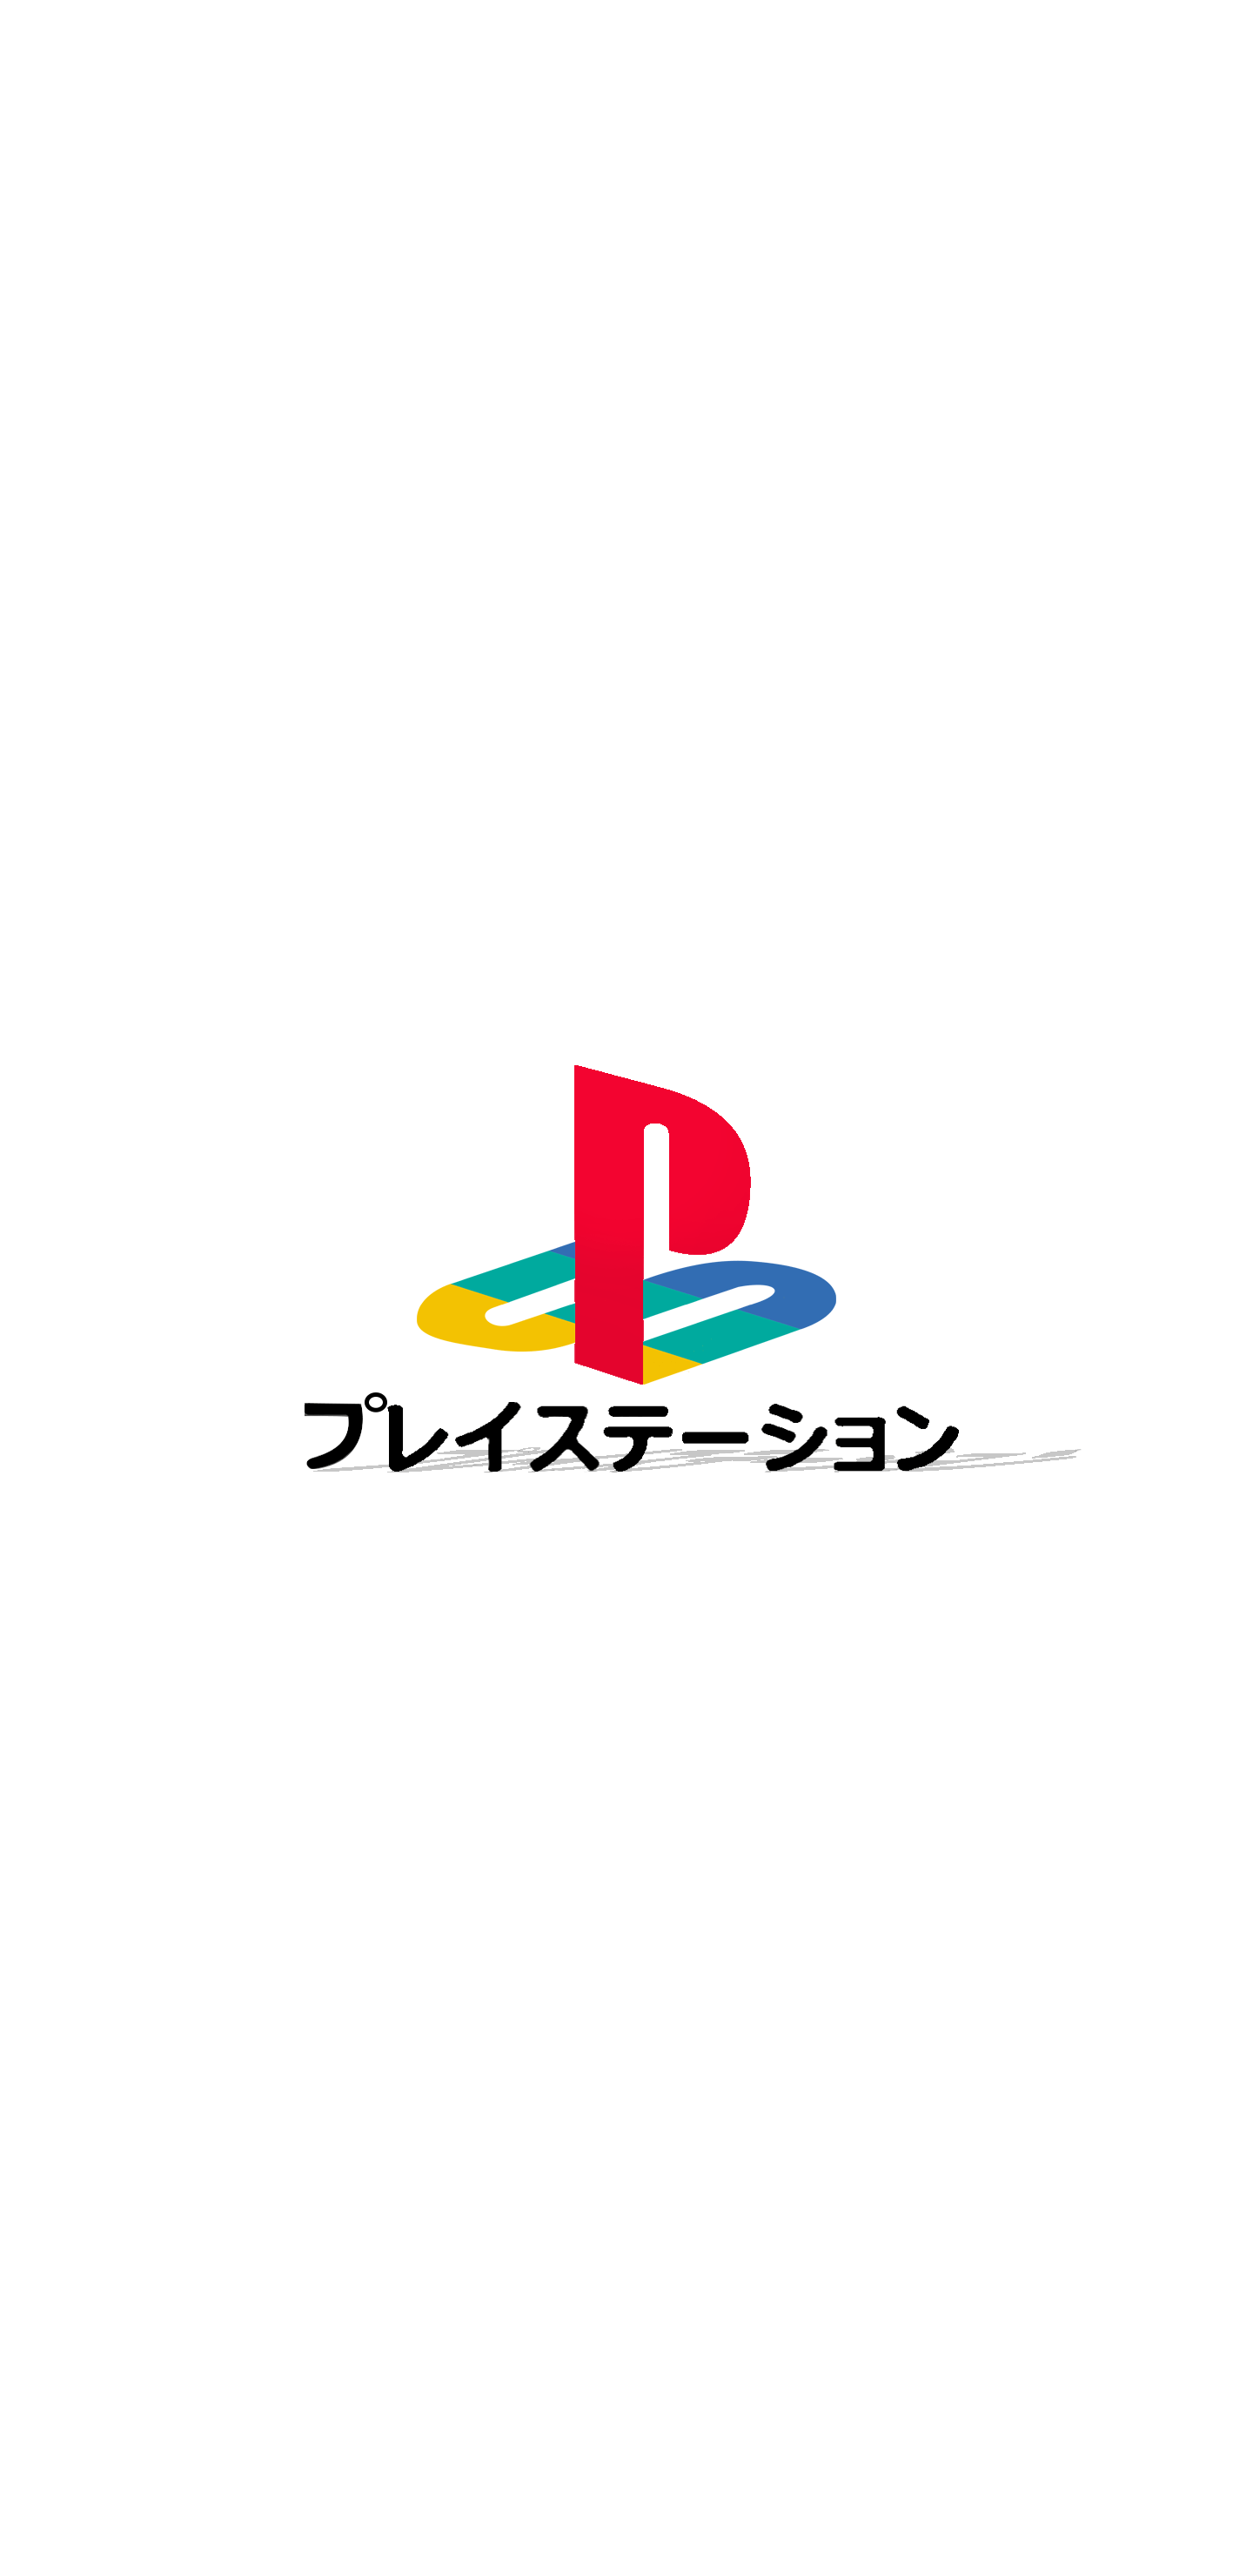 Playstation Logo with Katakana and Lighting (1440x2960)